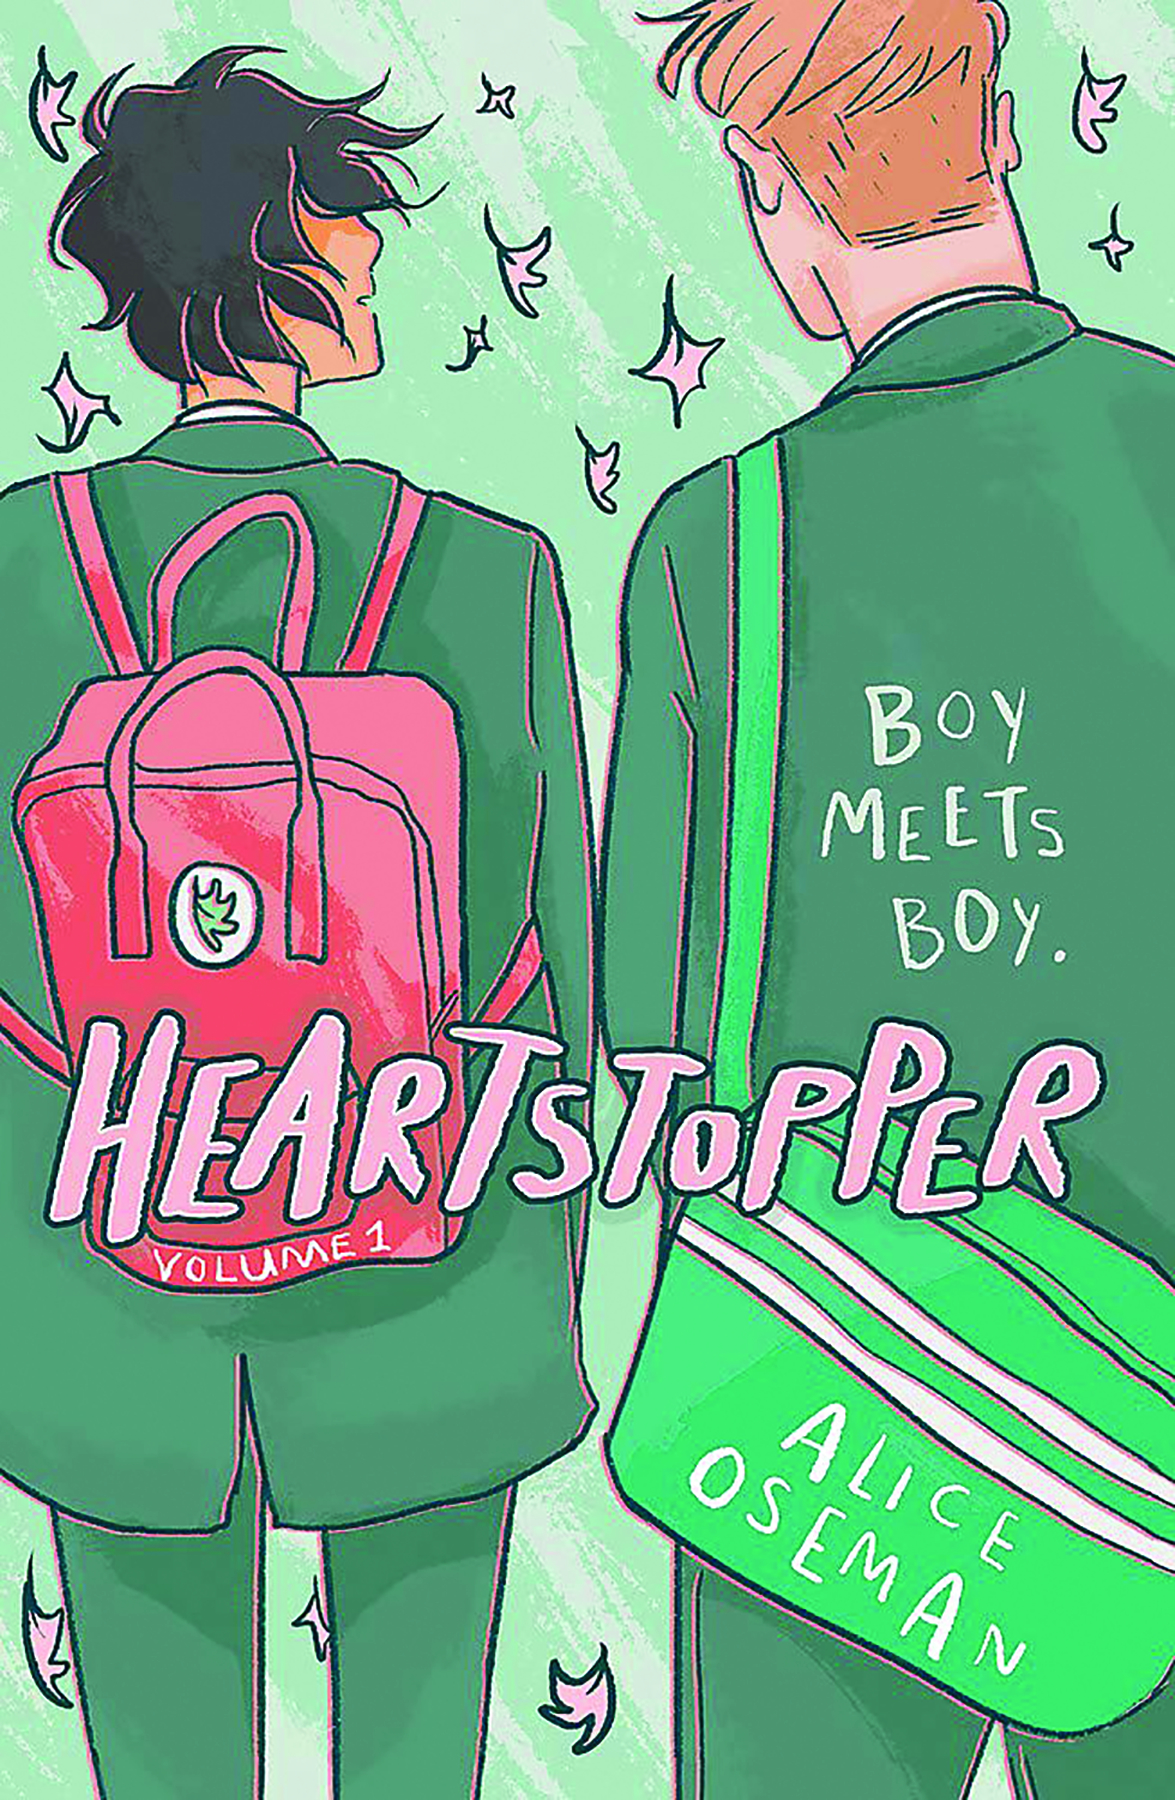 Heartstopper Volume 1 Graphic Novel